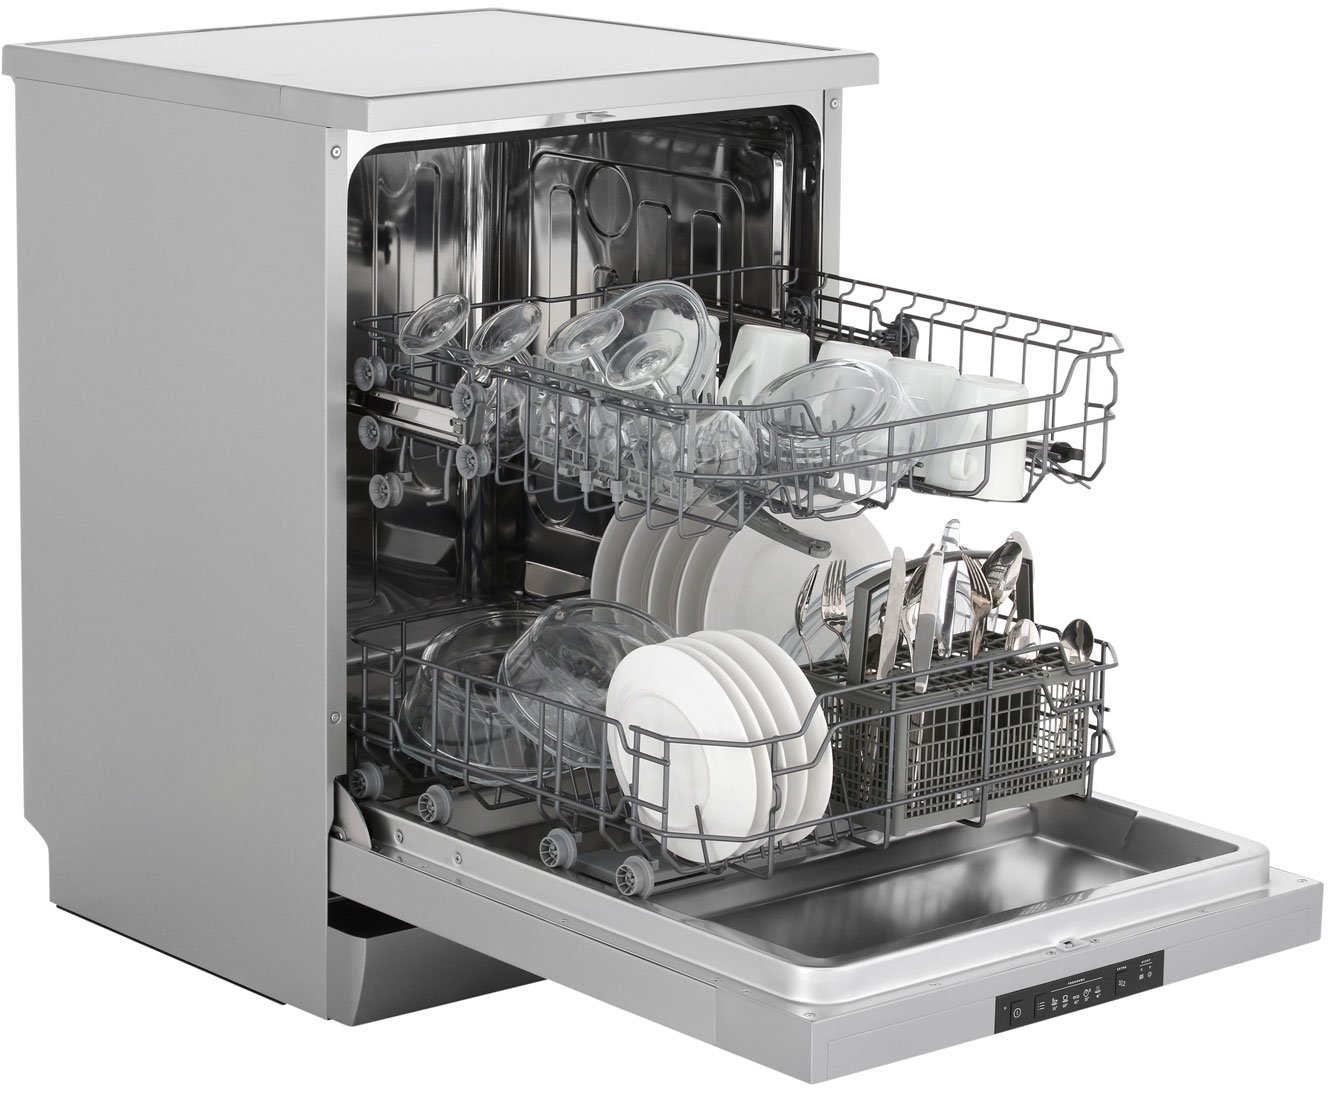 Посудомоечная машина горение встраиваемая 60 см. Посудомоечная машина Gorenje gs62040w. Посудомоечная машина Gorenje gs53010w. Посудомоечная машина Gorenje gs52040s. Gorenje gs62010s.